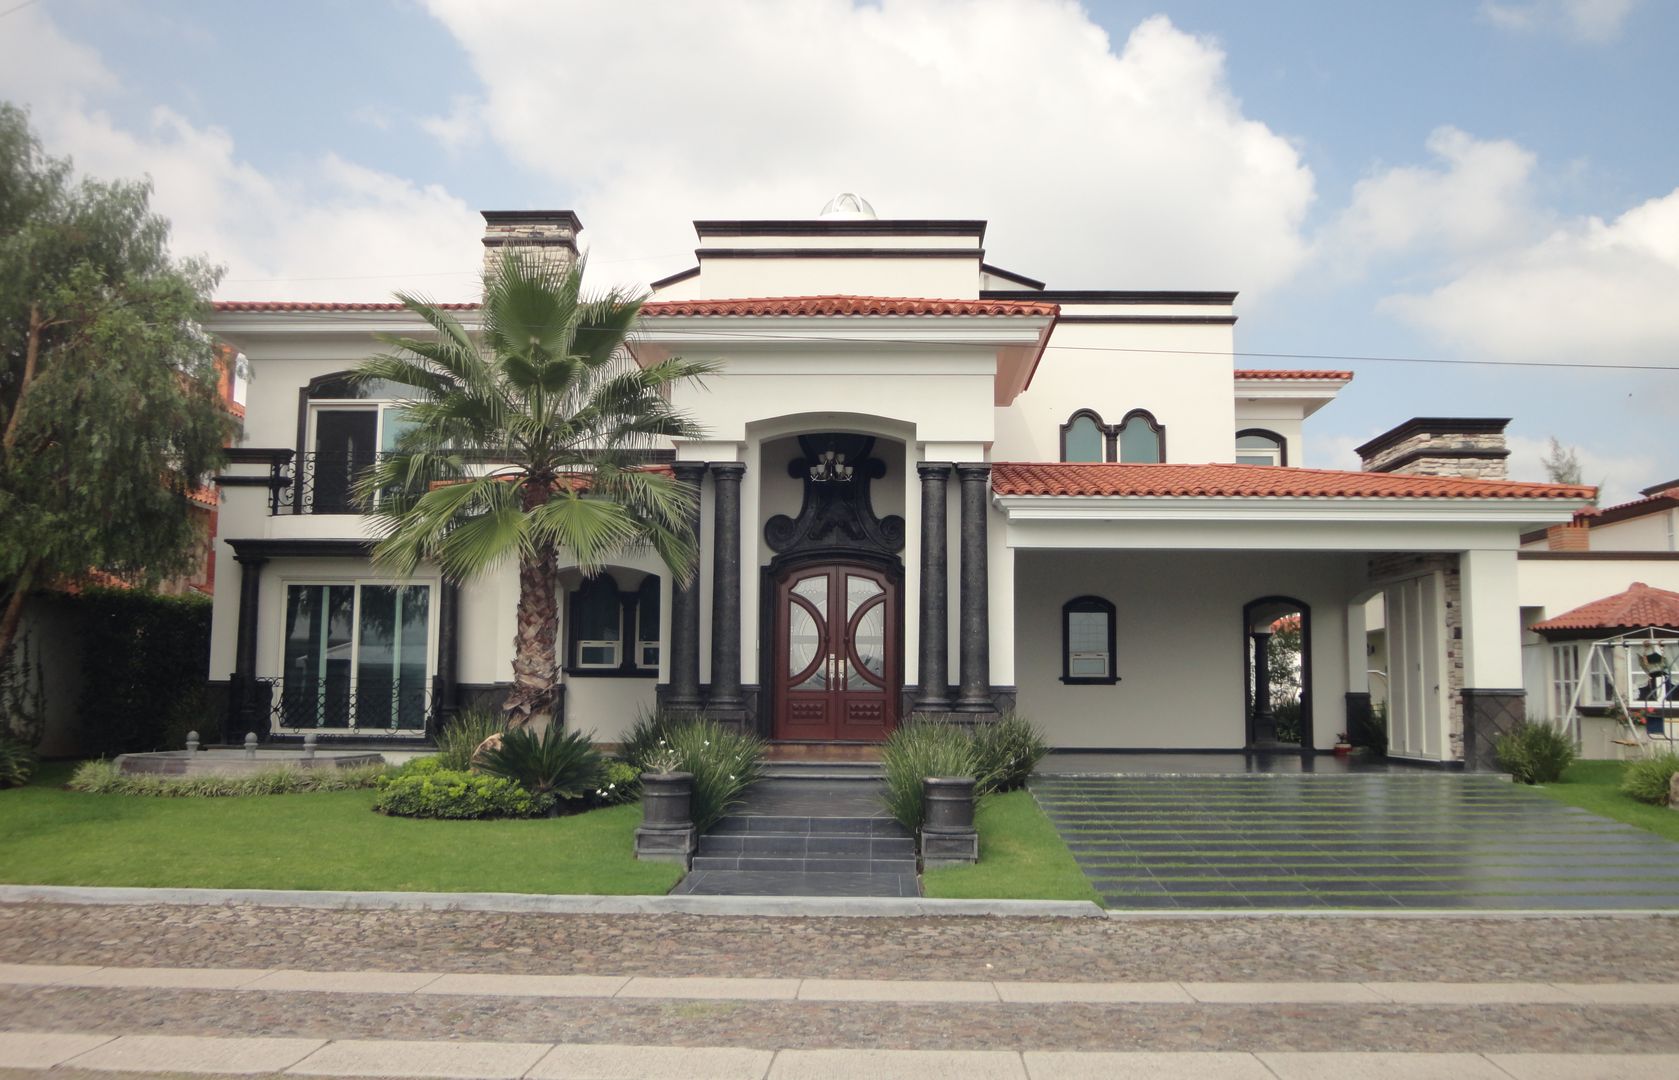 Casa El Pirul, arketipo-taller de arquitectura arketipo-taller de arquitectura Classic style houses